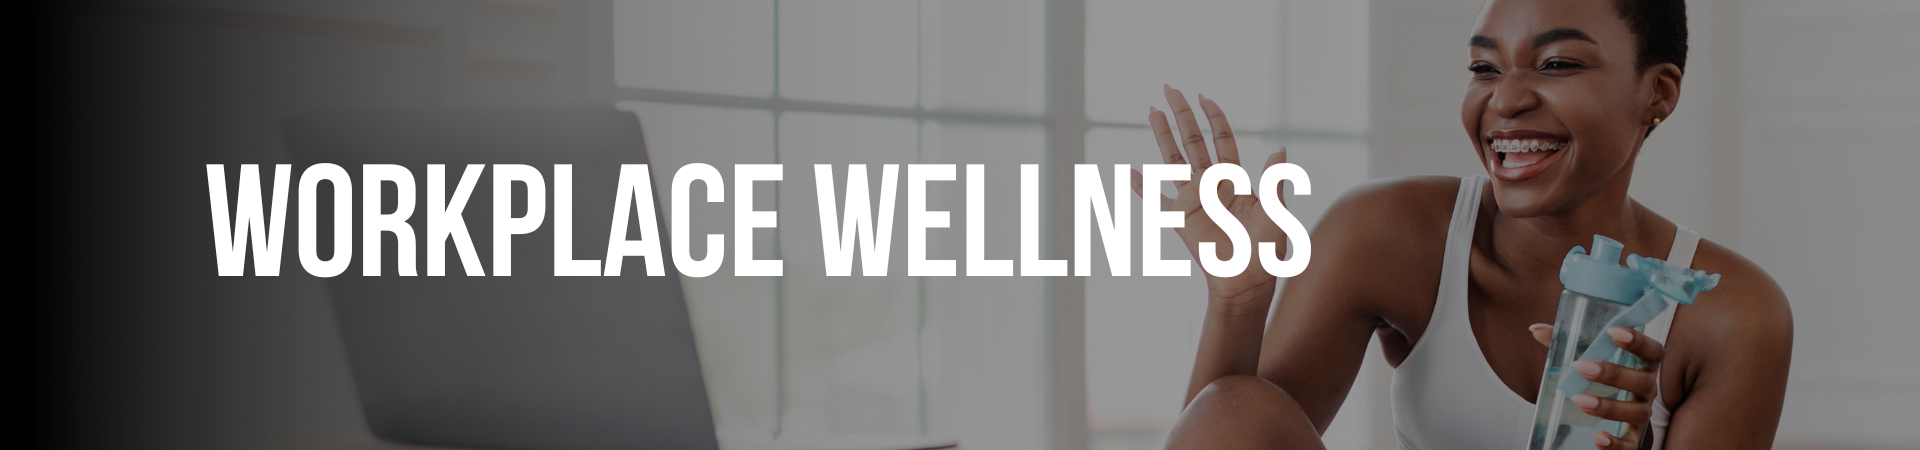 MexLucky | Workplace Wellness